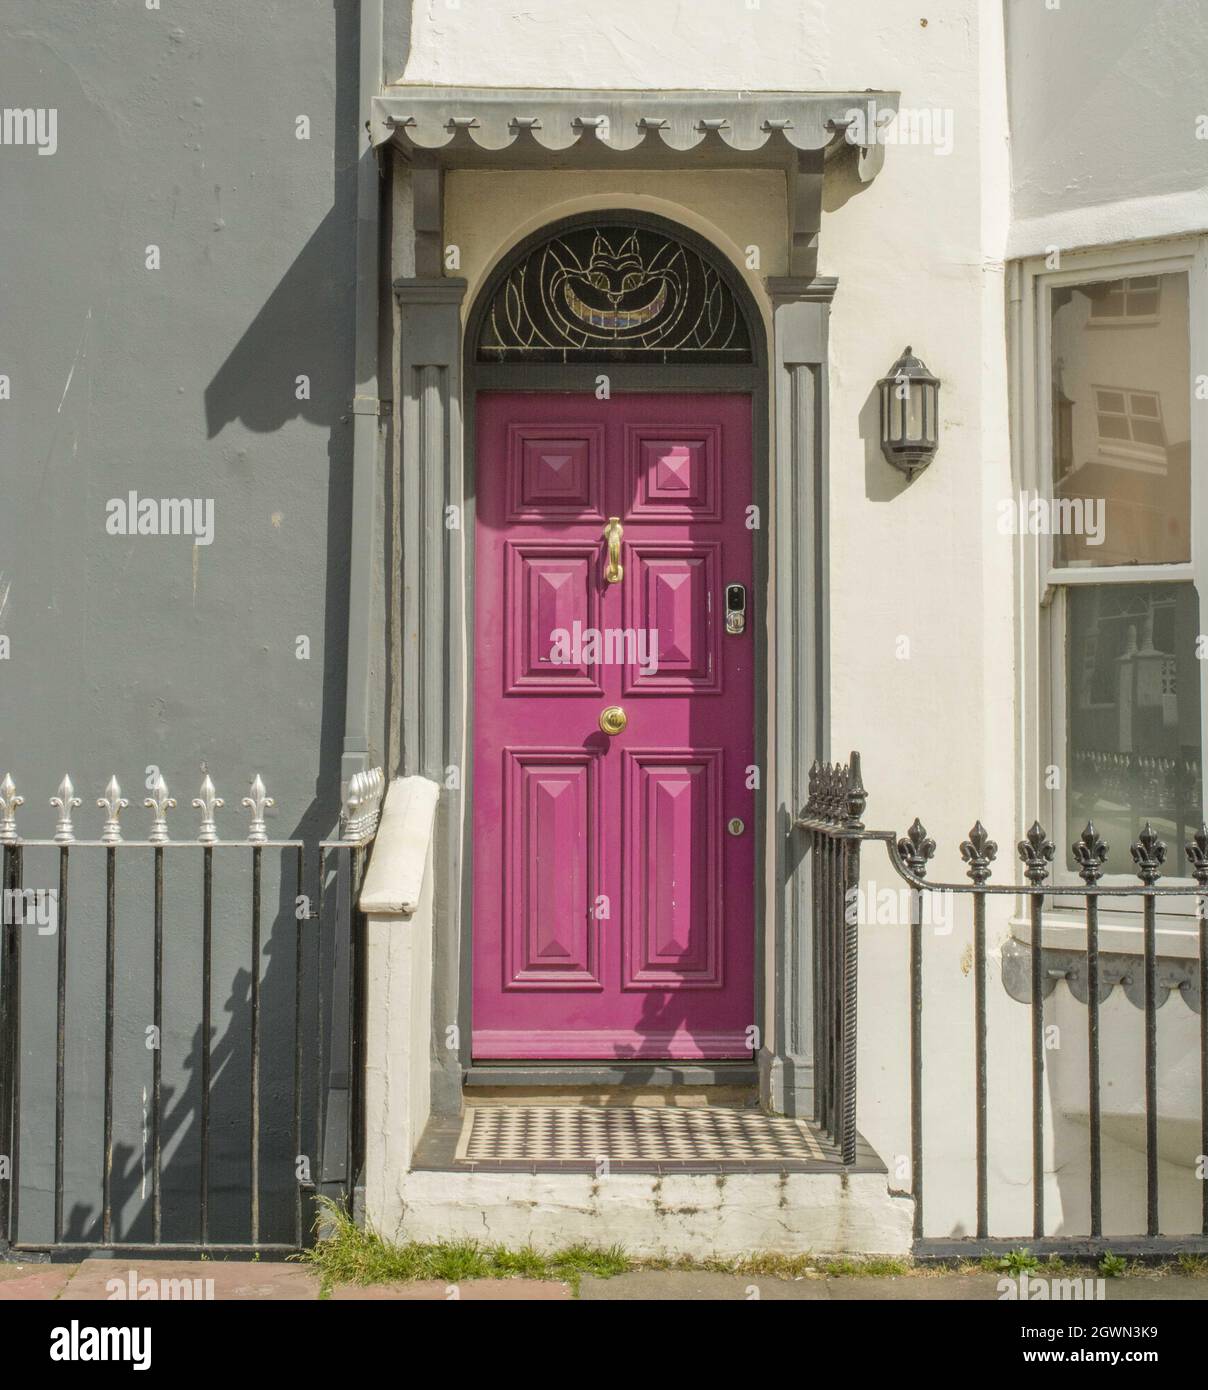 maison avec porte rose et vitraux Banque D'Images